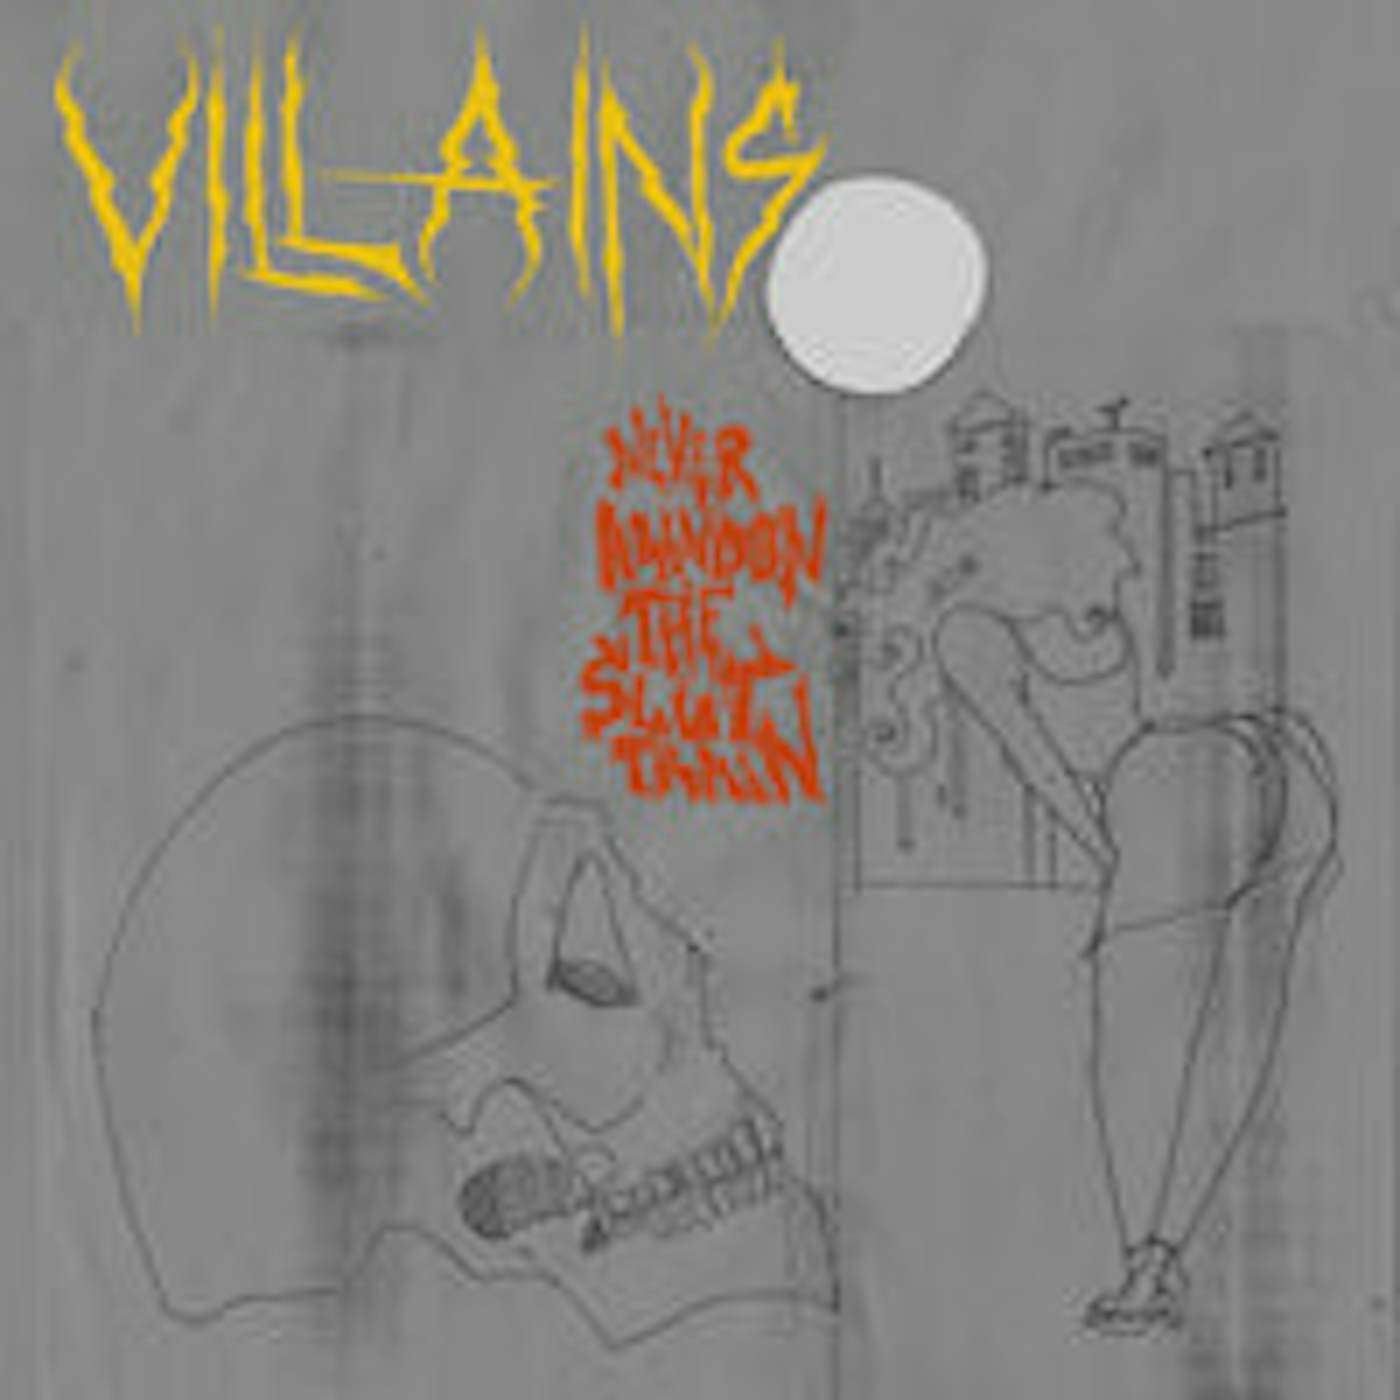 Villains LP - Never Abandon The Slut Train (Vinyl)